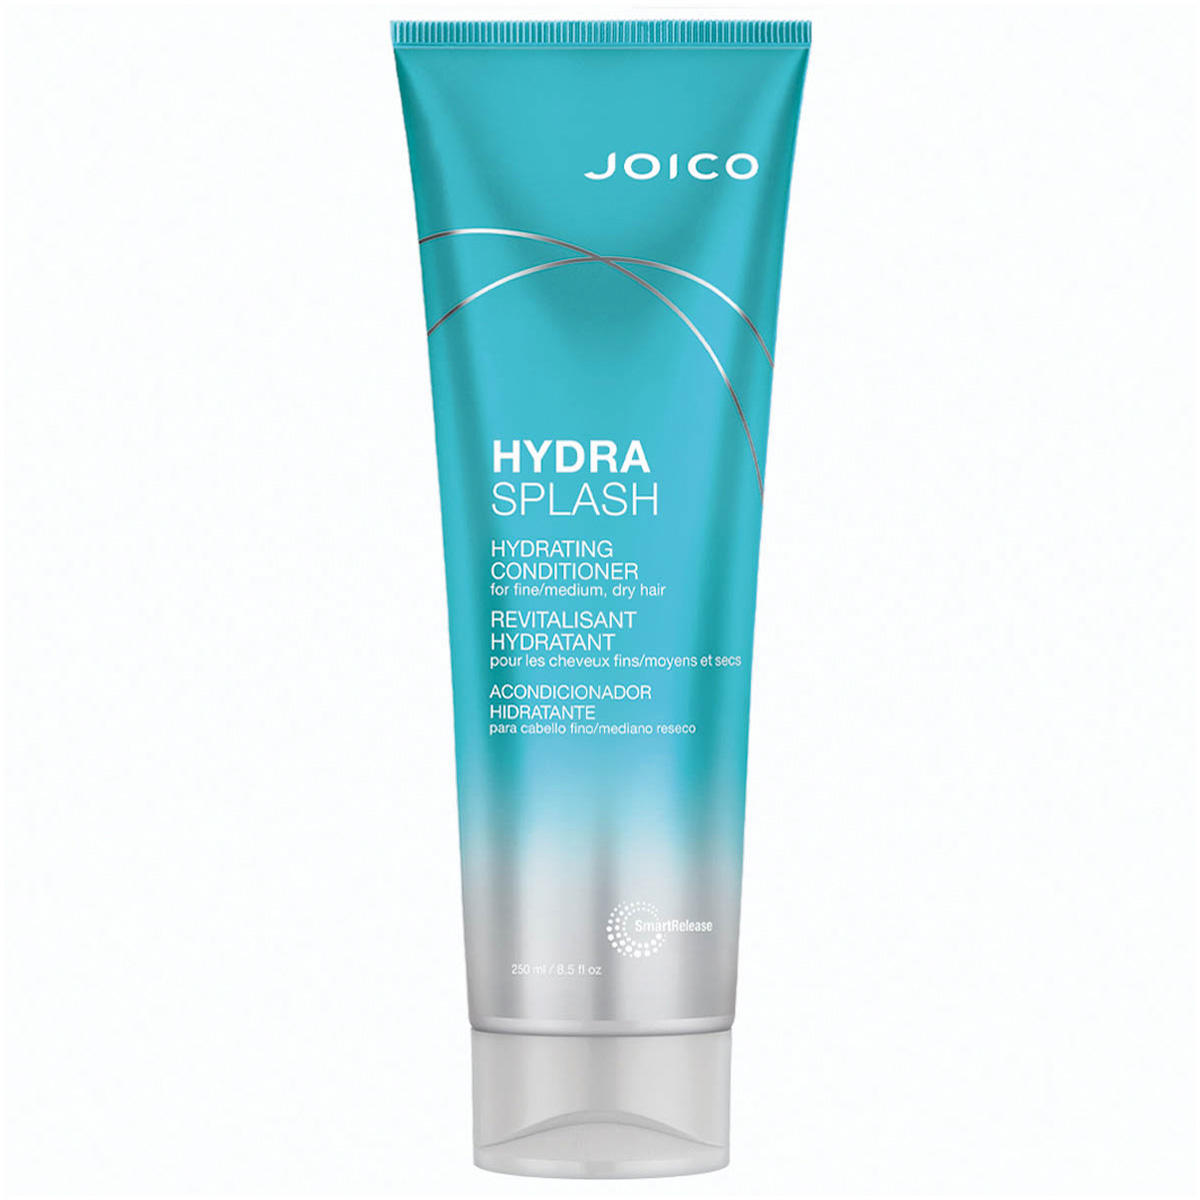 JOICO HYDRA SPLASH Hydrating Conditioner 250 ml - 1